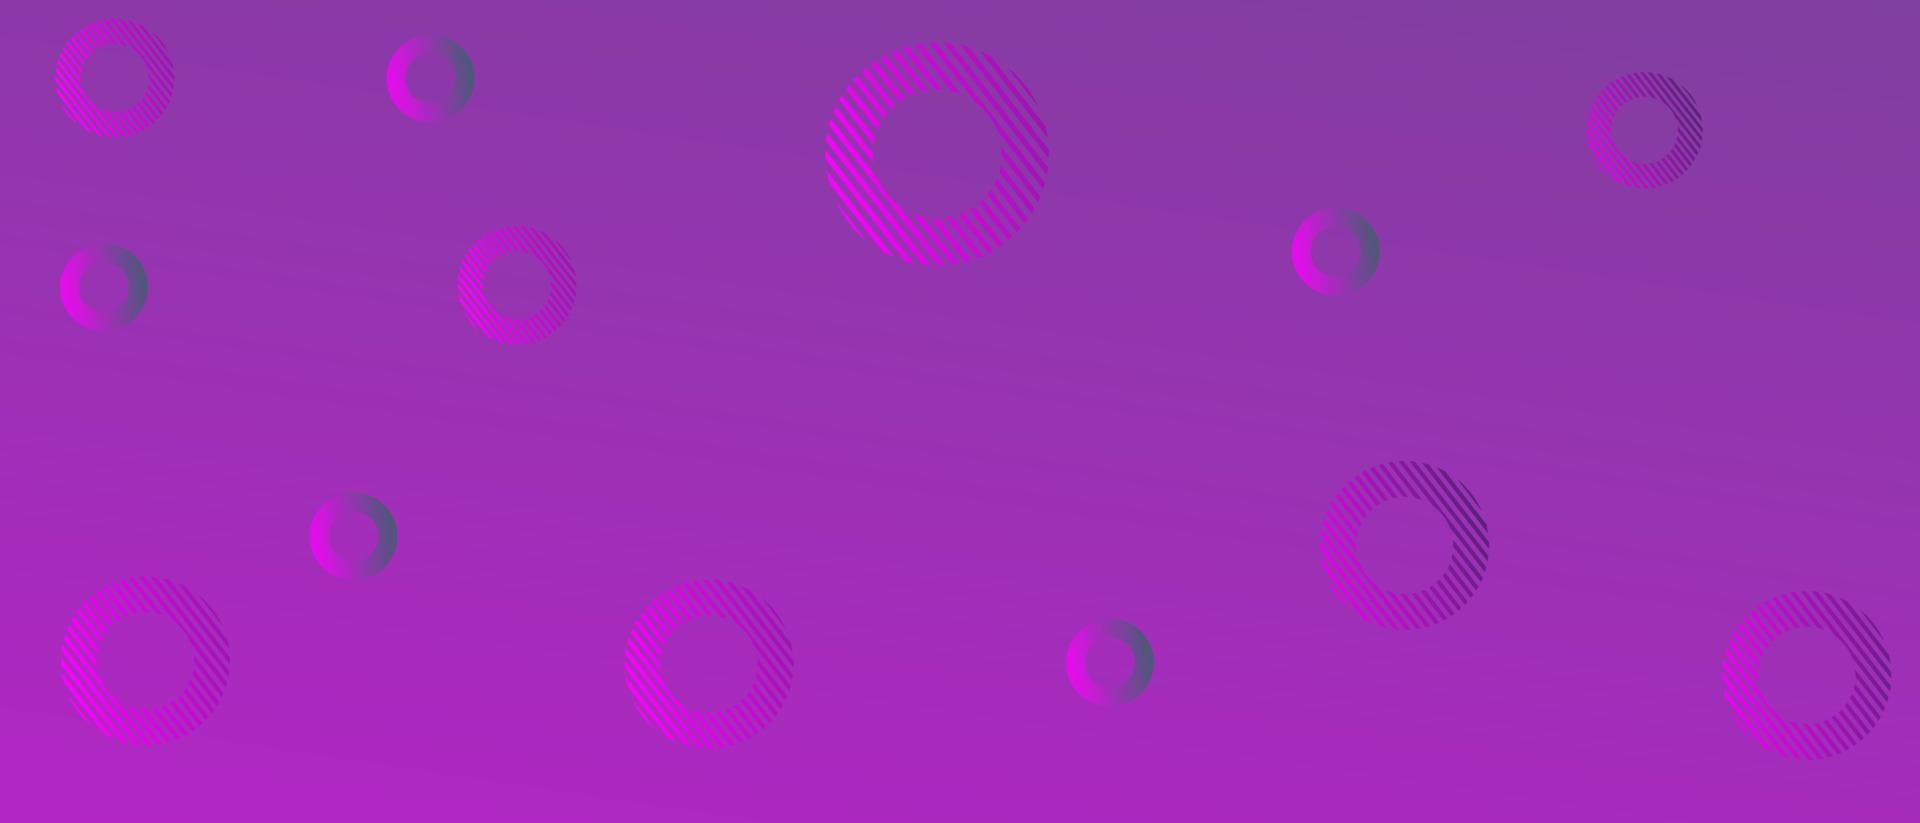 disegno di sfondo sfumato viola con elementi circolari. utilizzato per progettare banner, landing page, siti Web e poster vettore